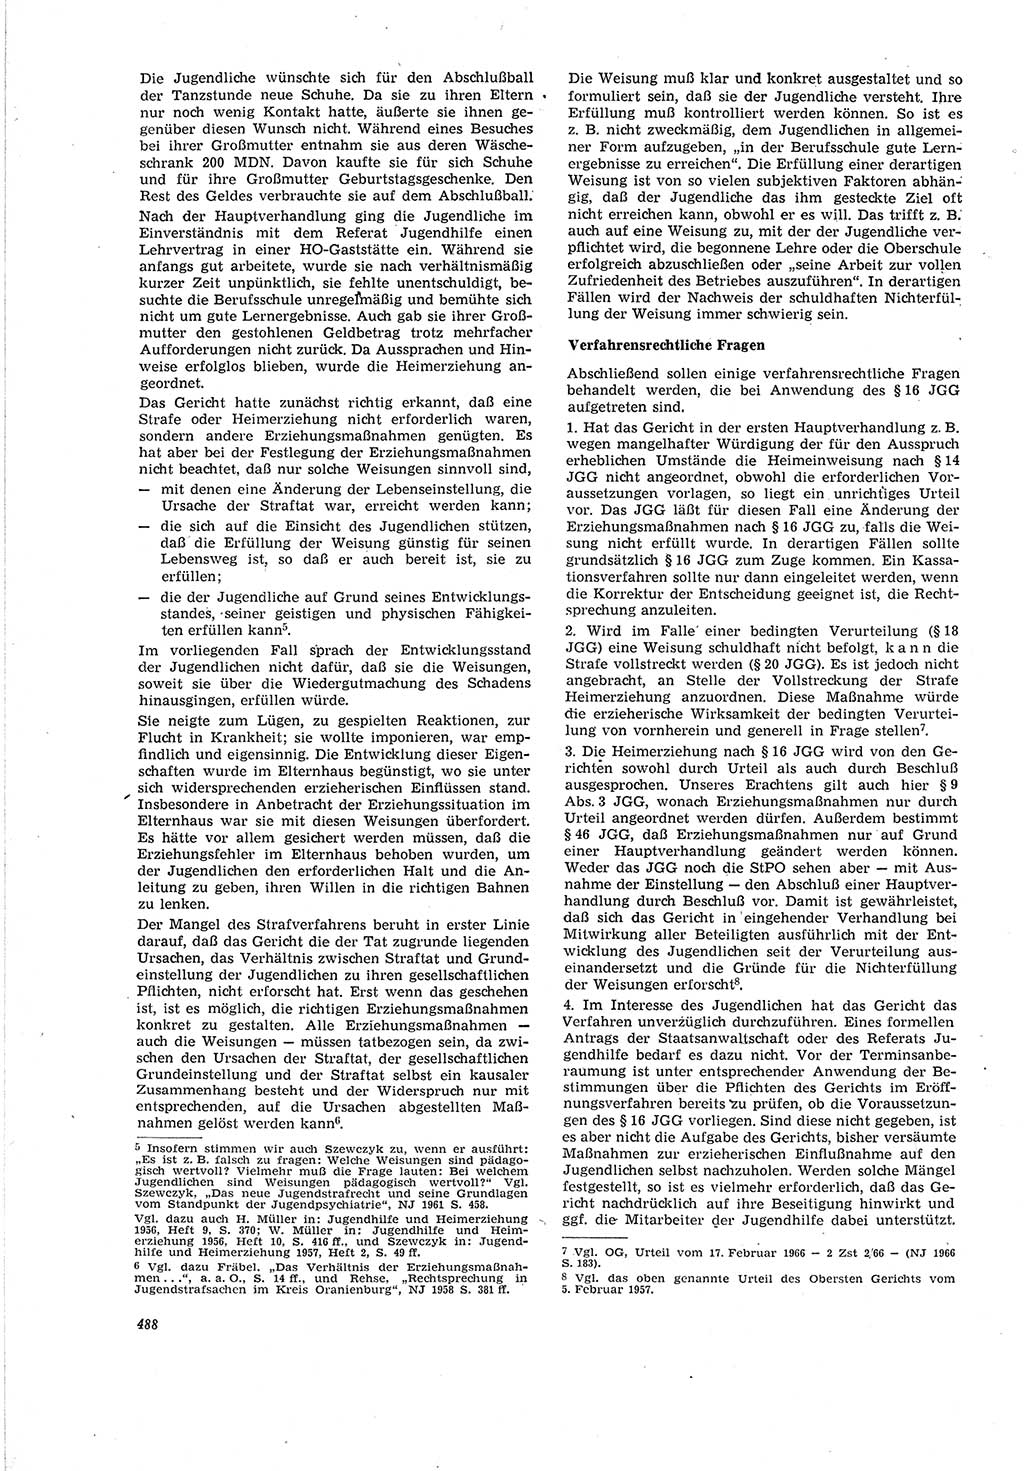 Neue Justiz (NJ), Zeitschrift für Recht und Rechtswissenschaft [Deutsche Demokratische Republik (DDR)], 20. Jahrgang 1966, Seite 488 (NJ DDR 1966, S. 488)